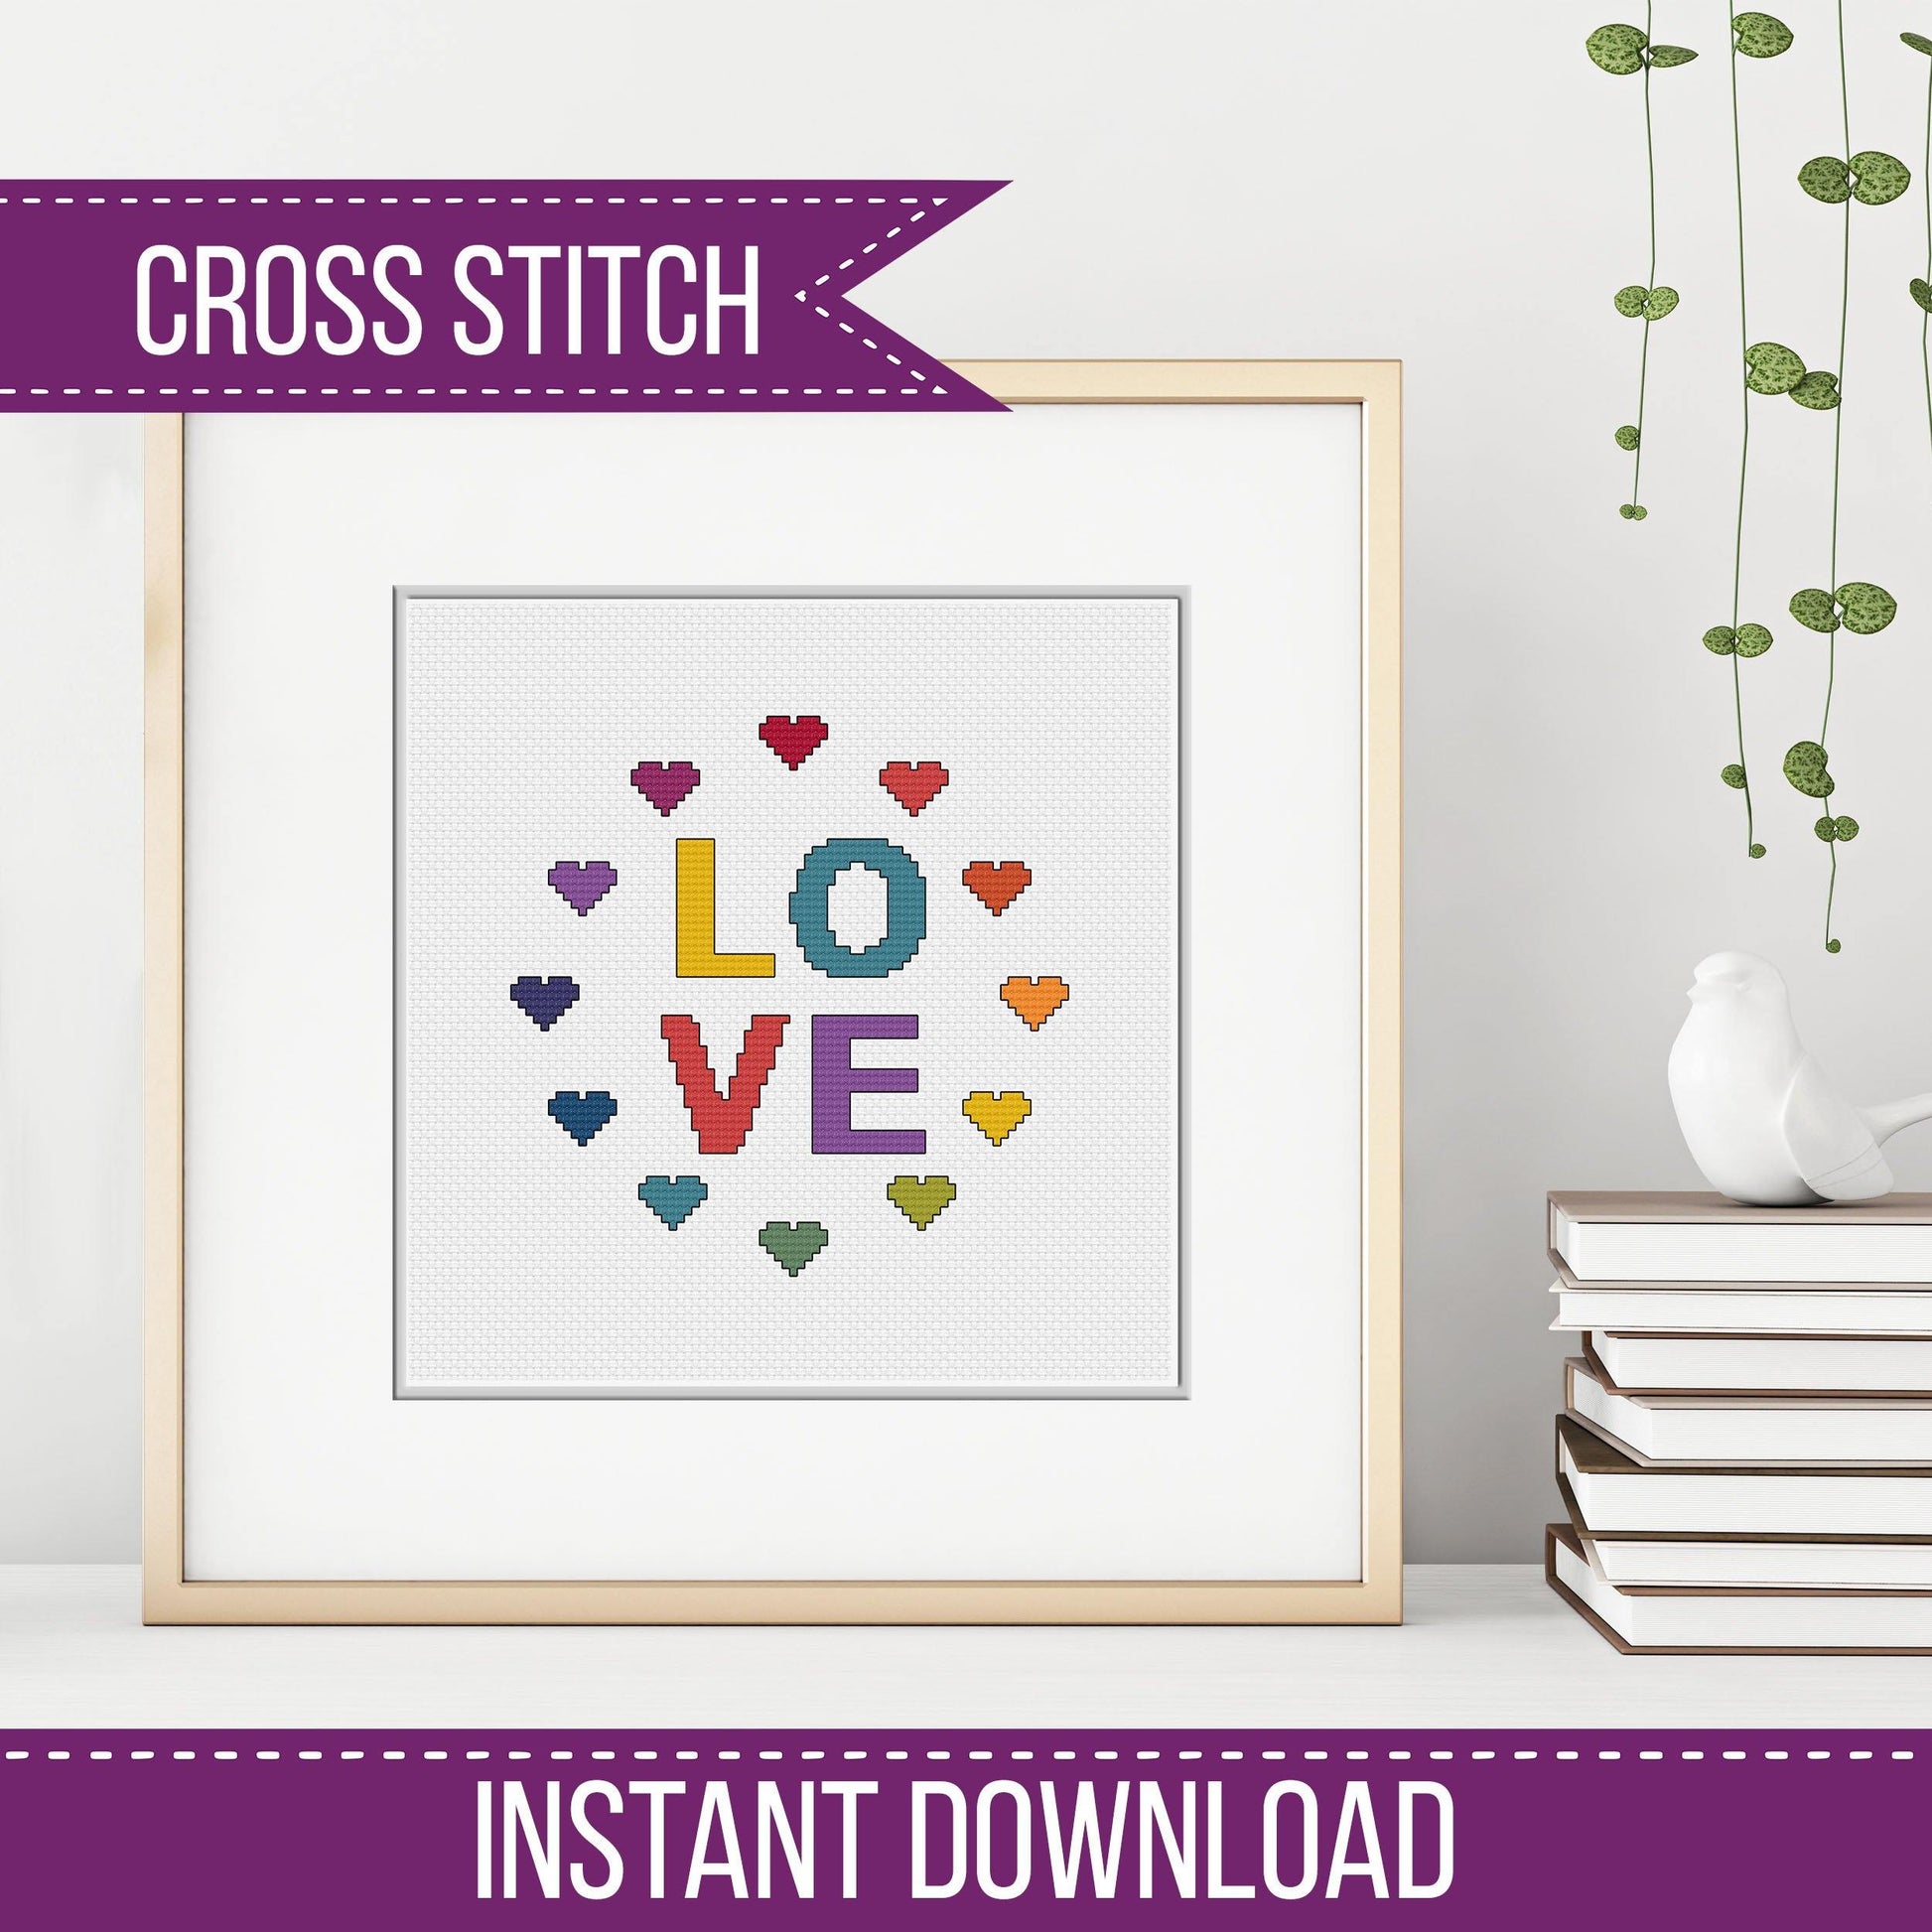 Love - Blackwork Patterns & Cross Stitch by Peppermint Purple